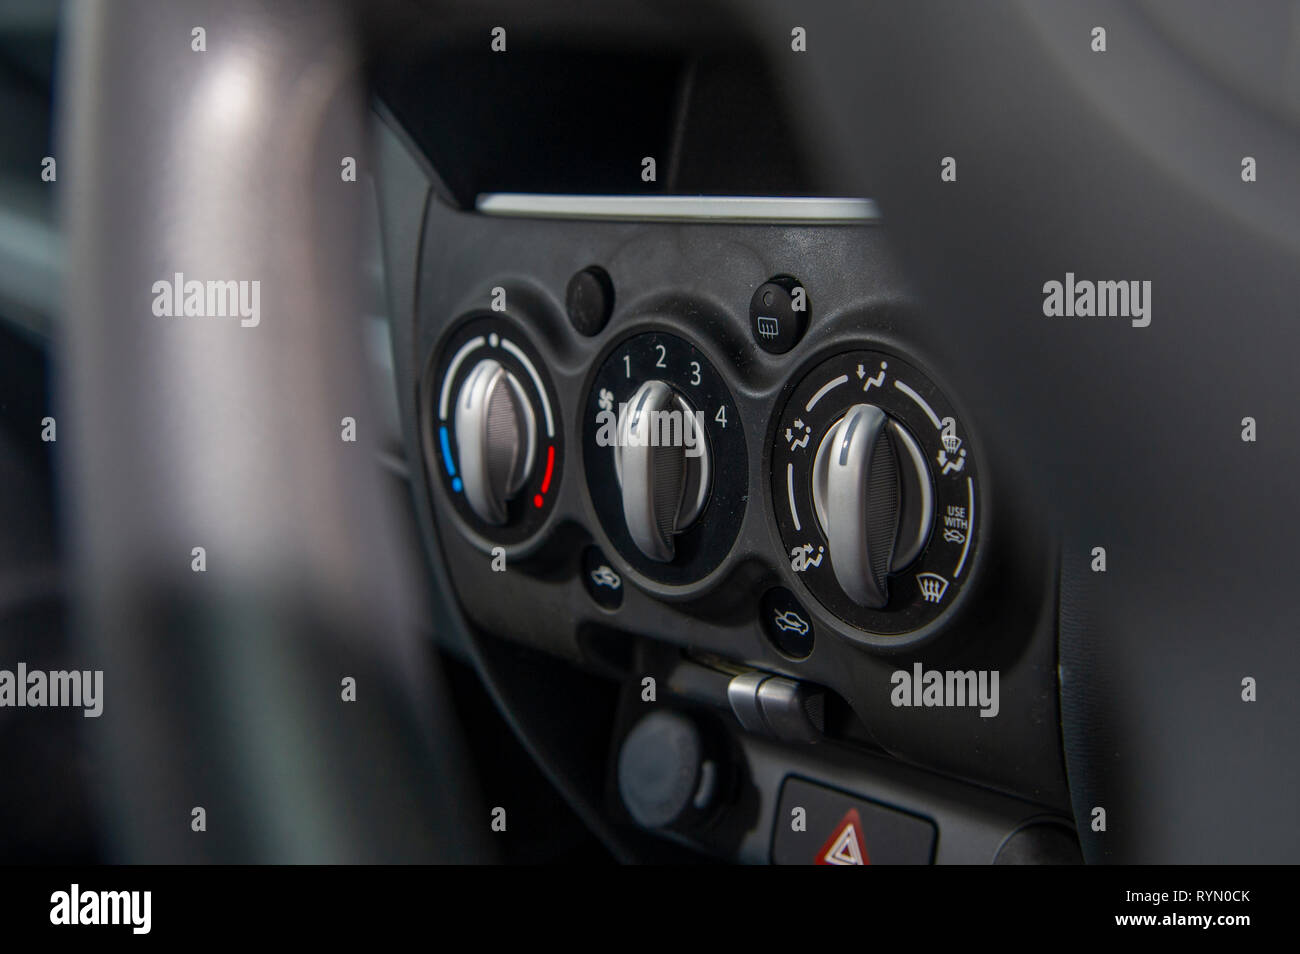 2014 Suzuki Alto voiture de ville compacte. Le contrôle de la ventilation et du chauffage Banque D'Images